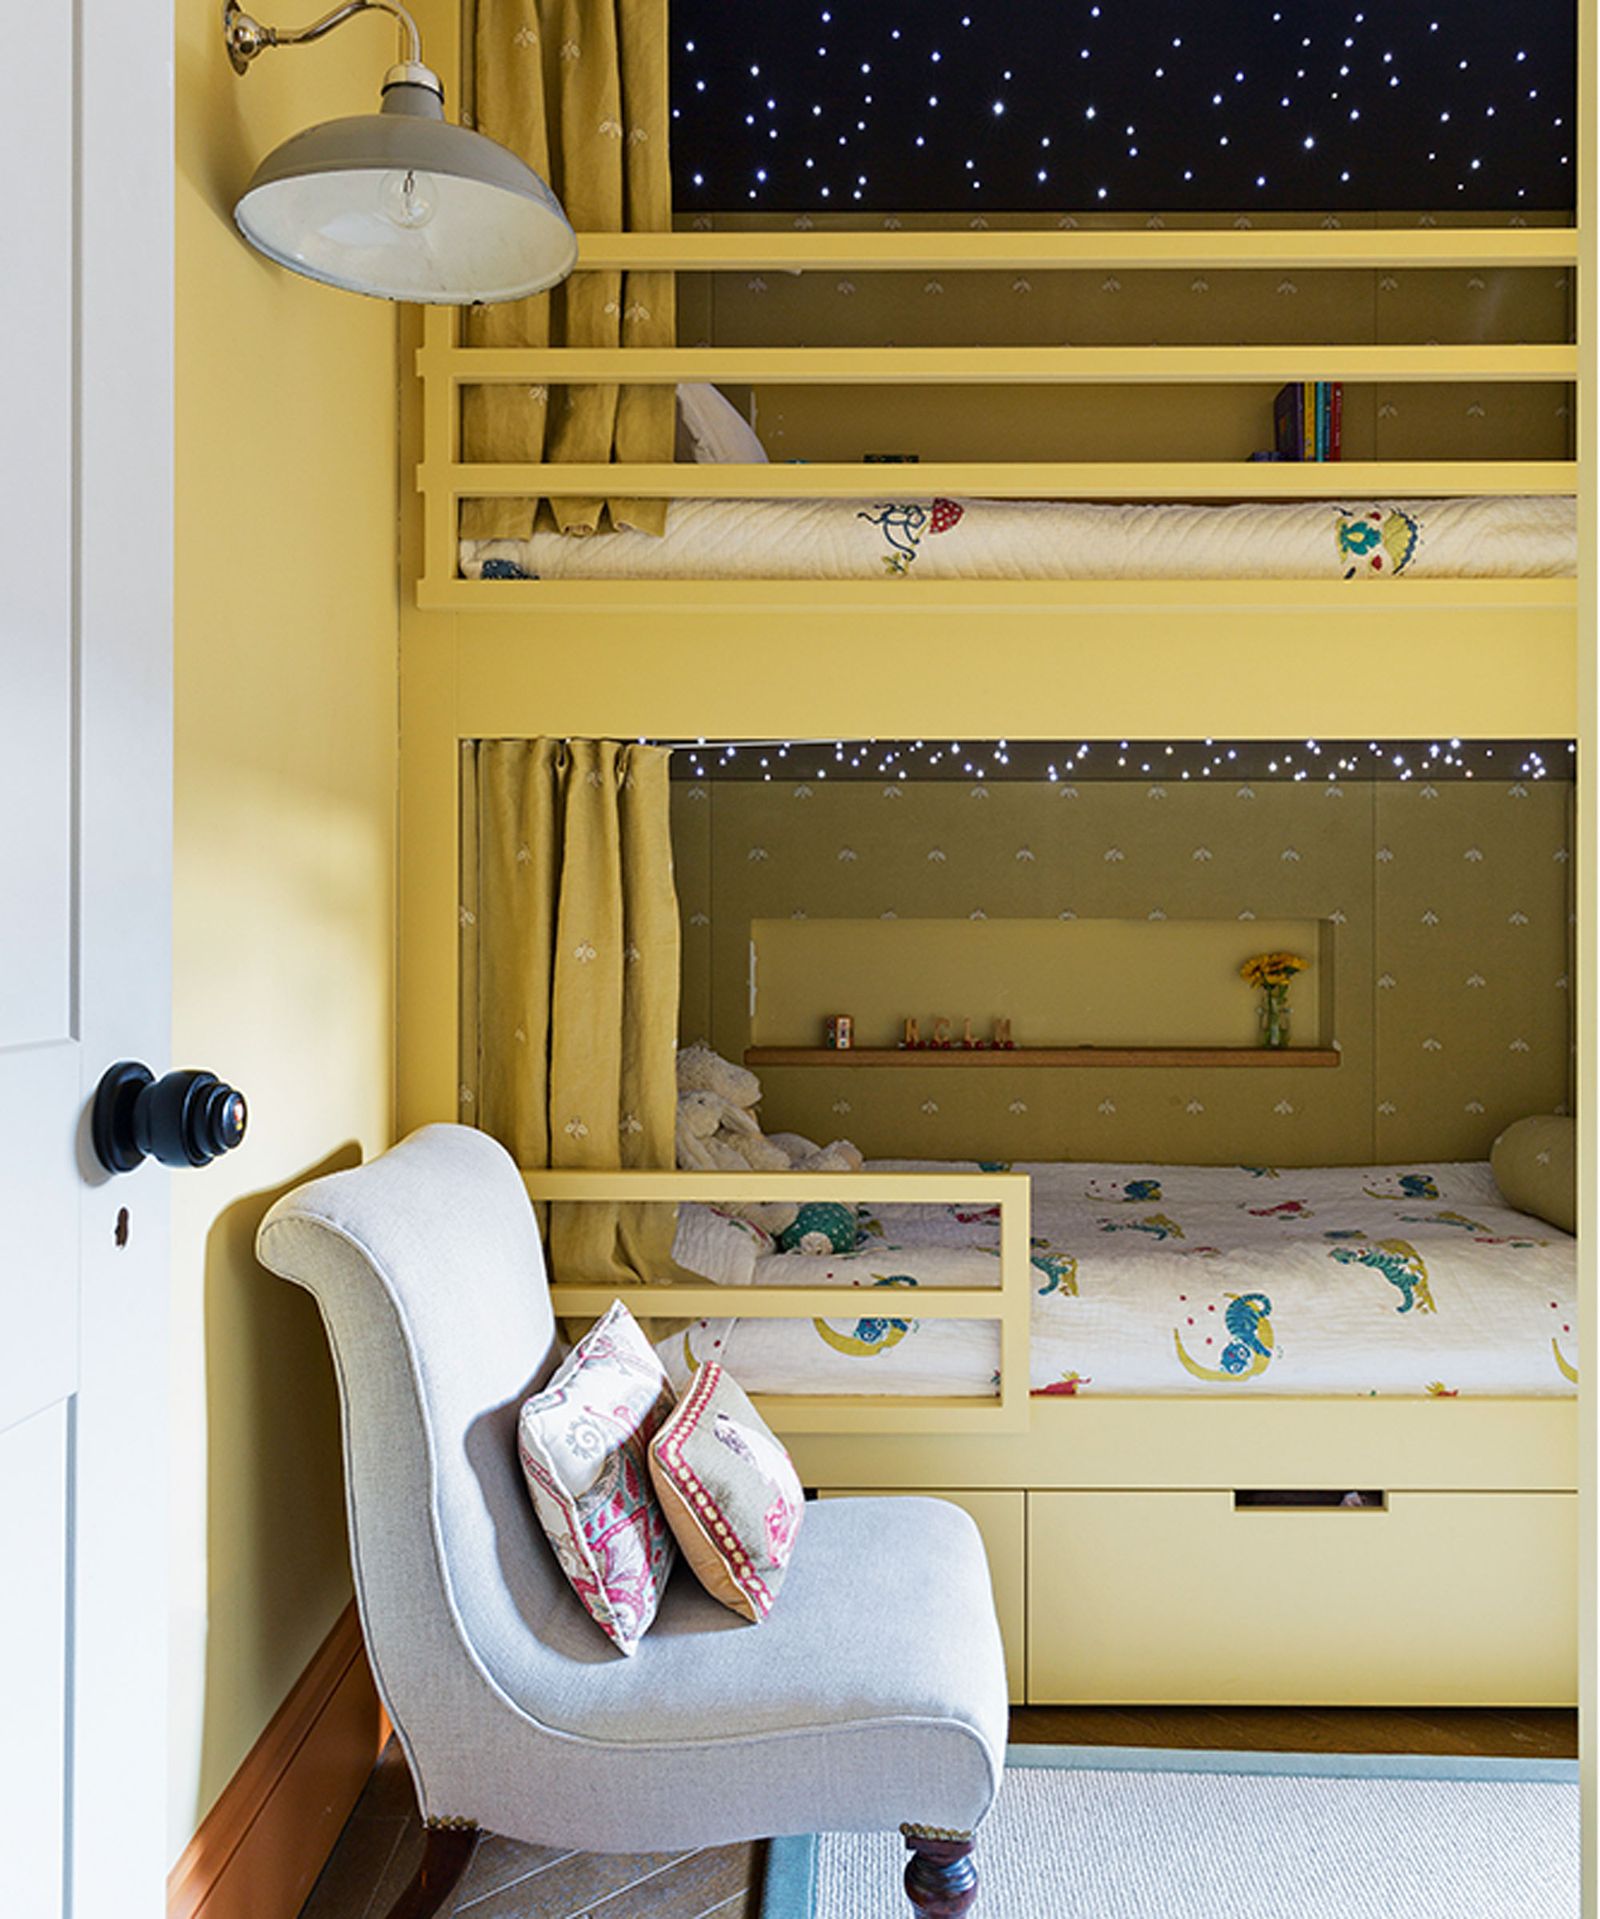 Underbed storage ideas: 11 ways to store under a bed